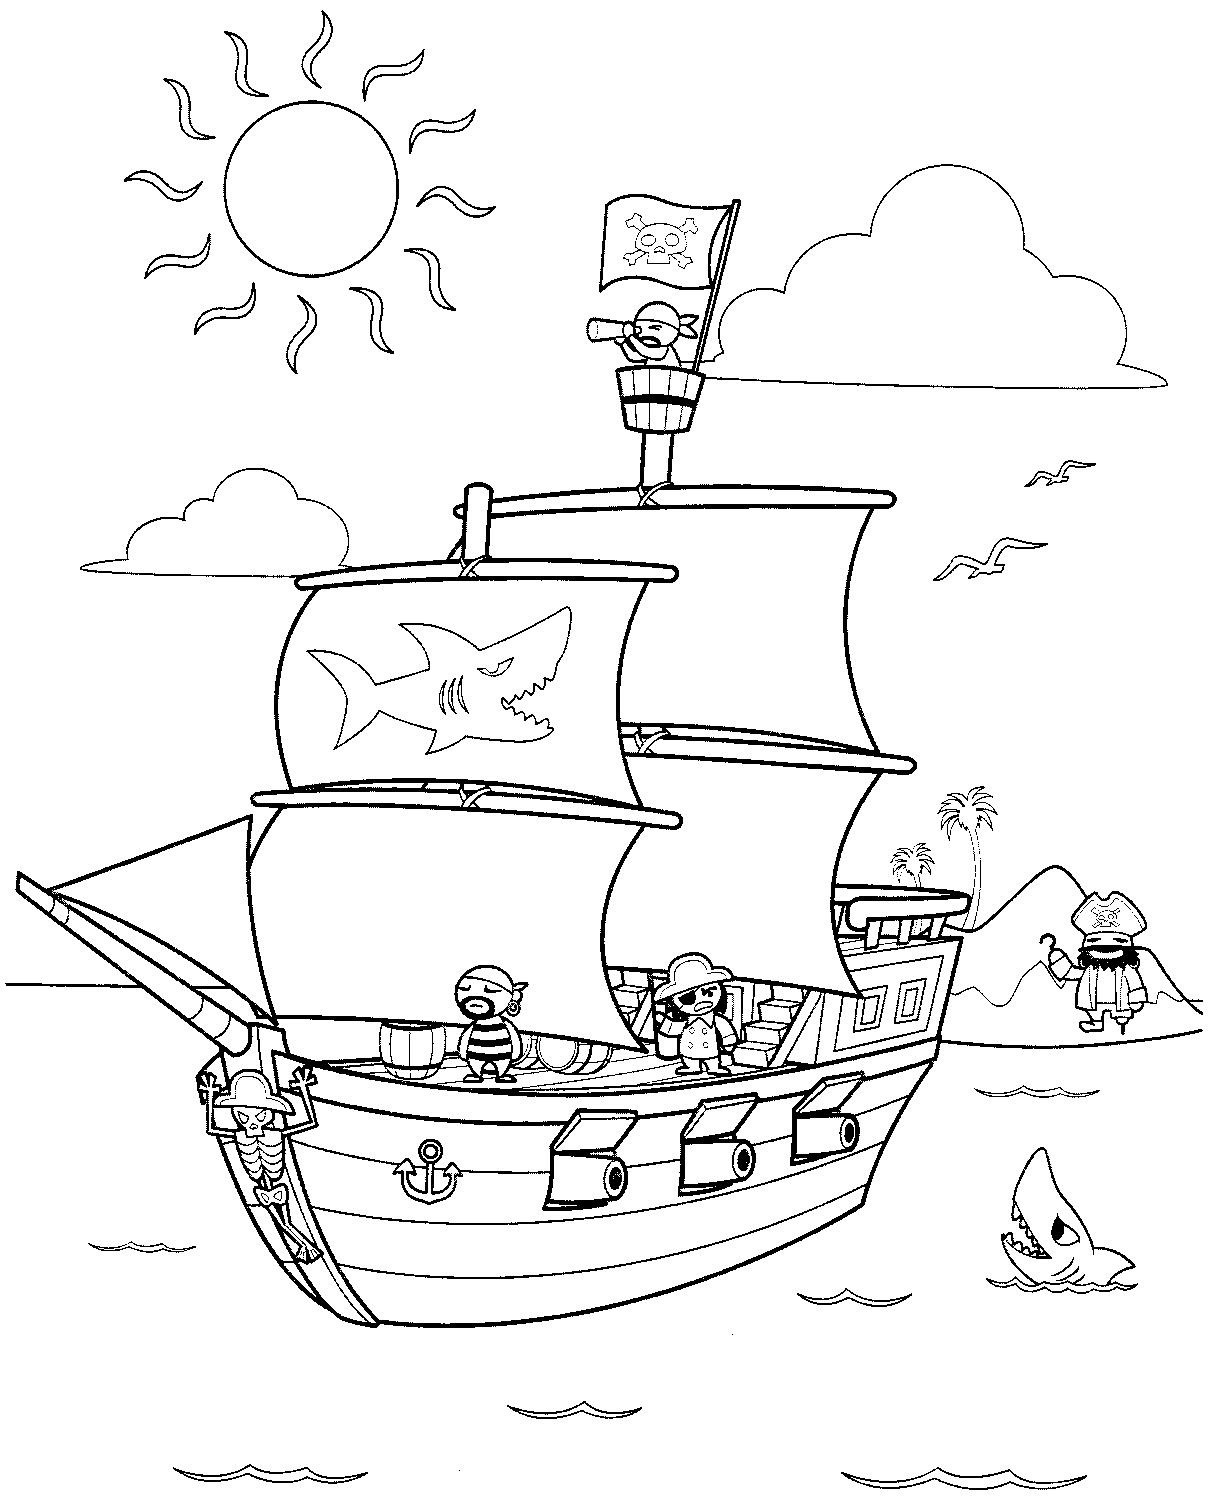 Пираты  Пираты на корабле, остров с пальмами, море, чайки, акулы